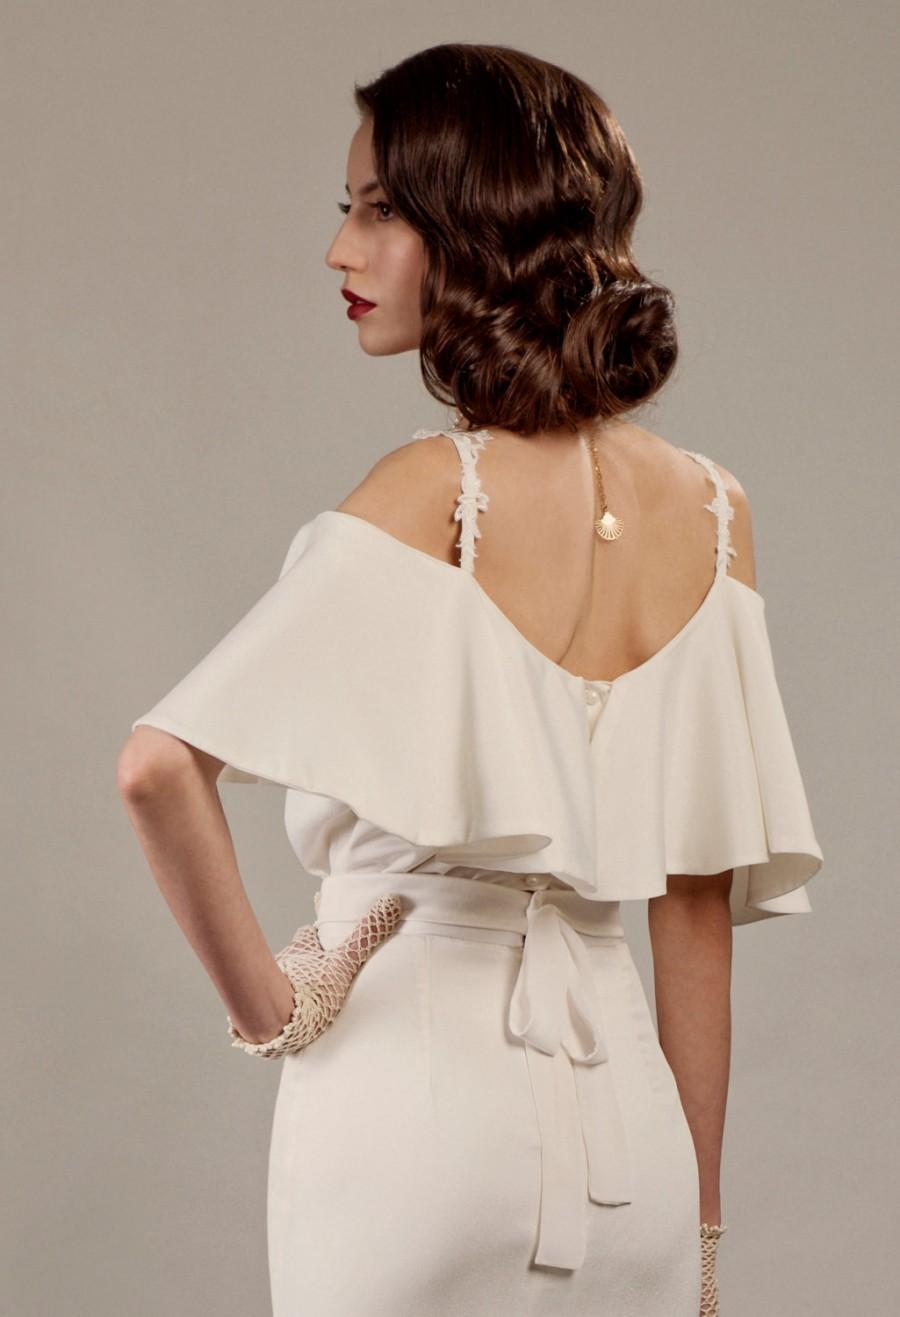 زفاف - Veronica two piece unique wedding dress ensemble in ivory glamorous 30's Hollywood vintage inspired